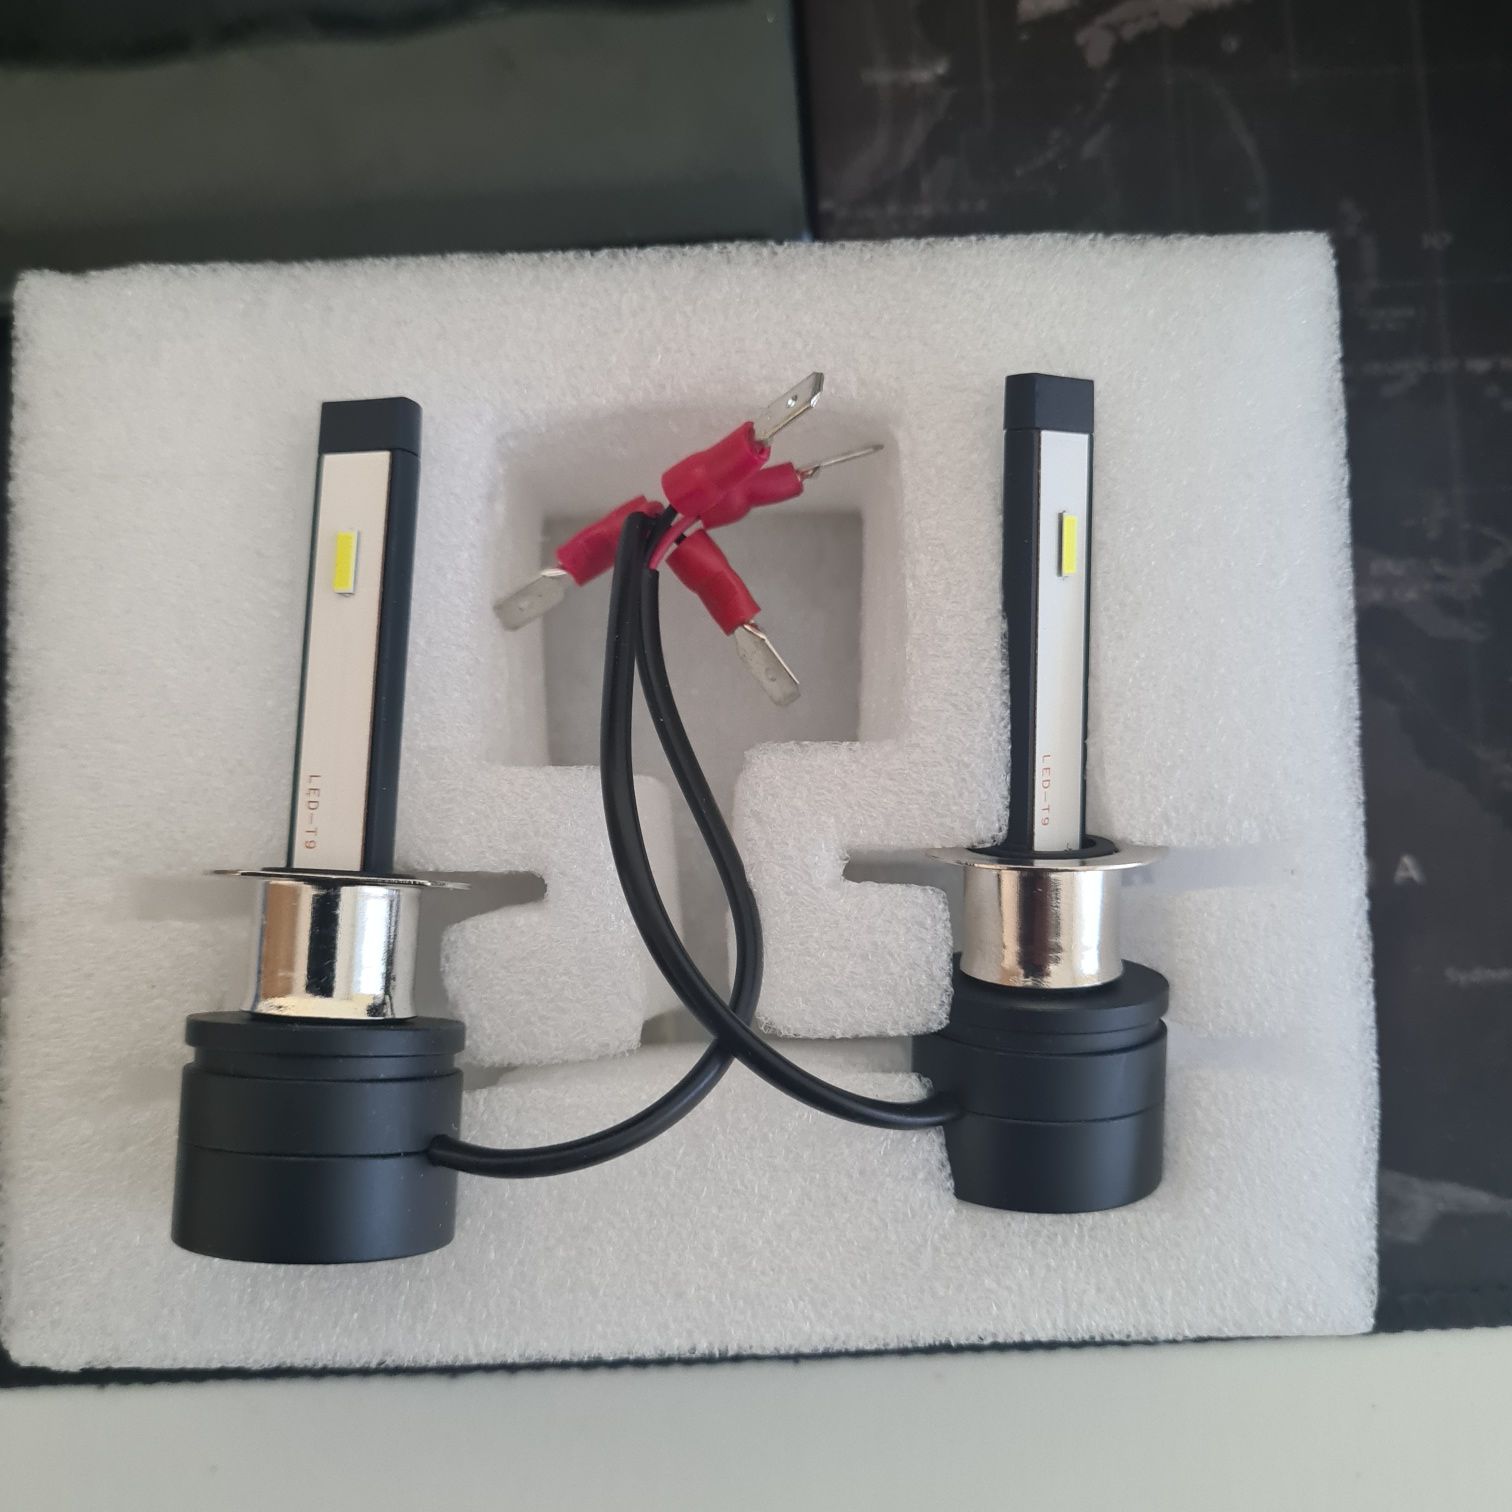 LED Лампы Отличного качества цена -7000 тенге